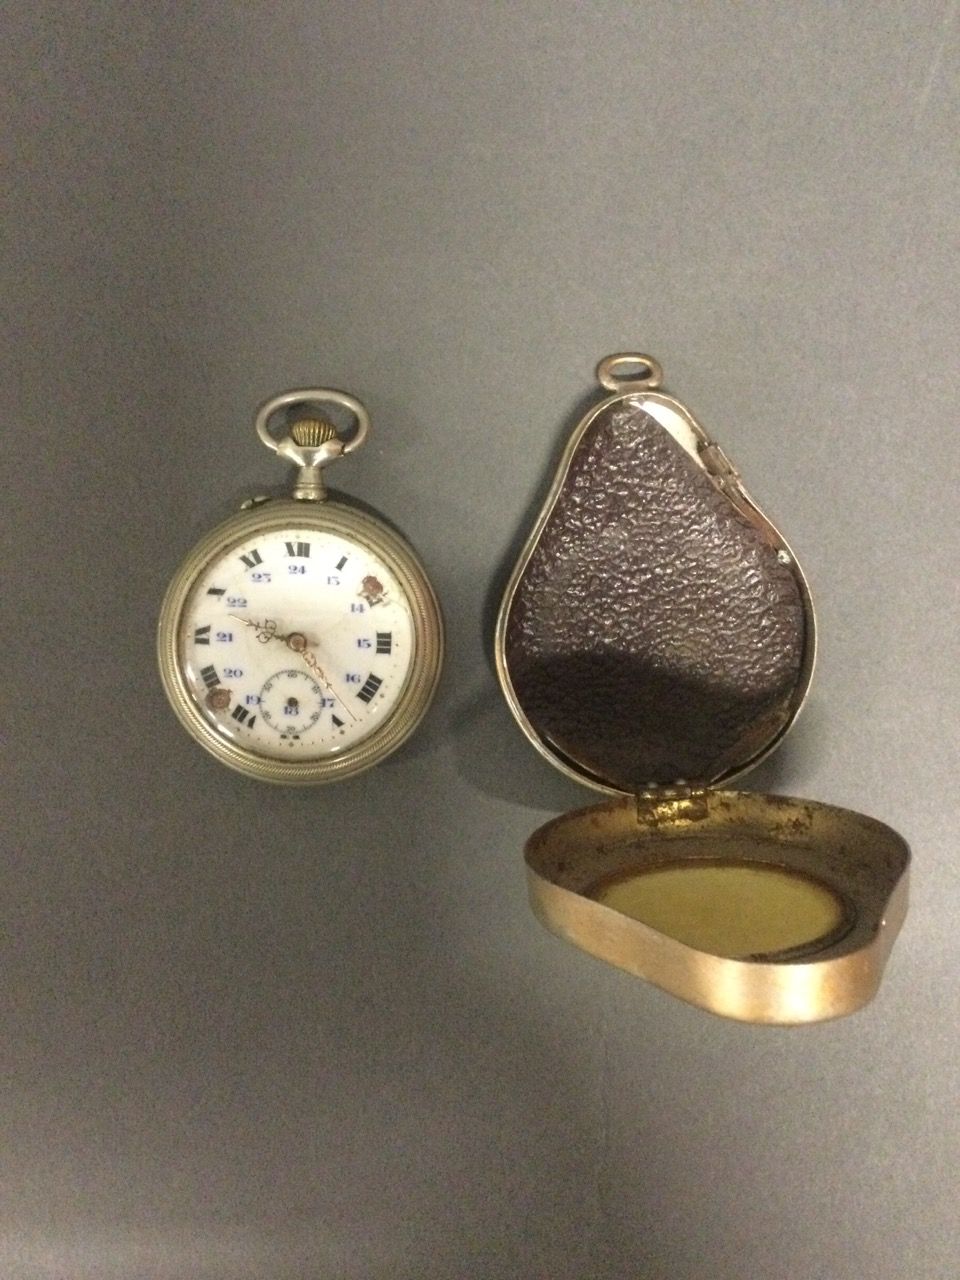 Null Taschenuhr aus Argentan, Ende des 19. Jahrhunderts, in ihrem Schutzgehäuse